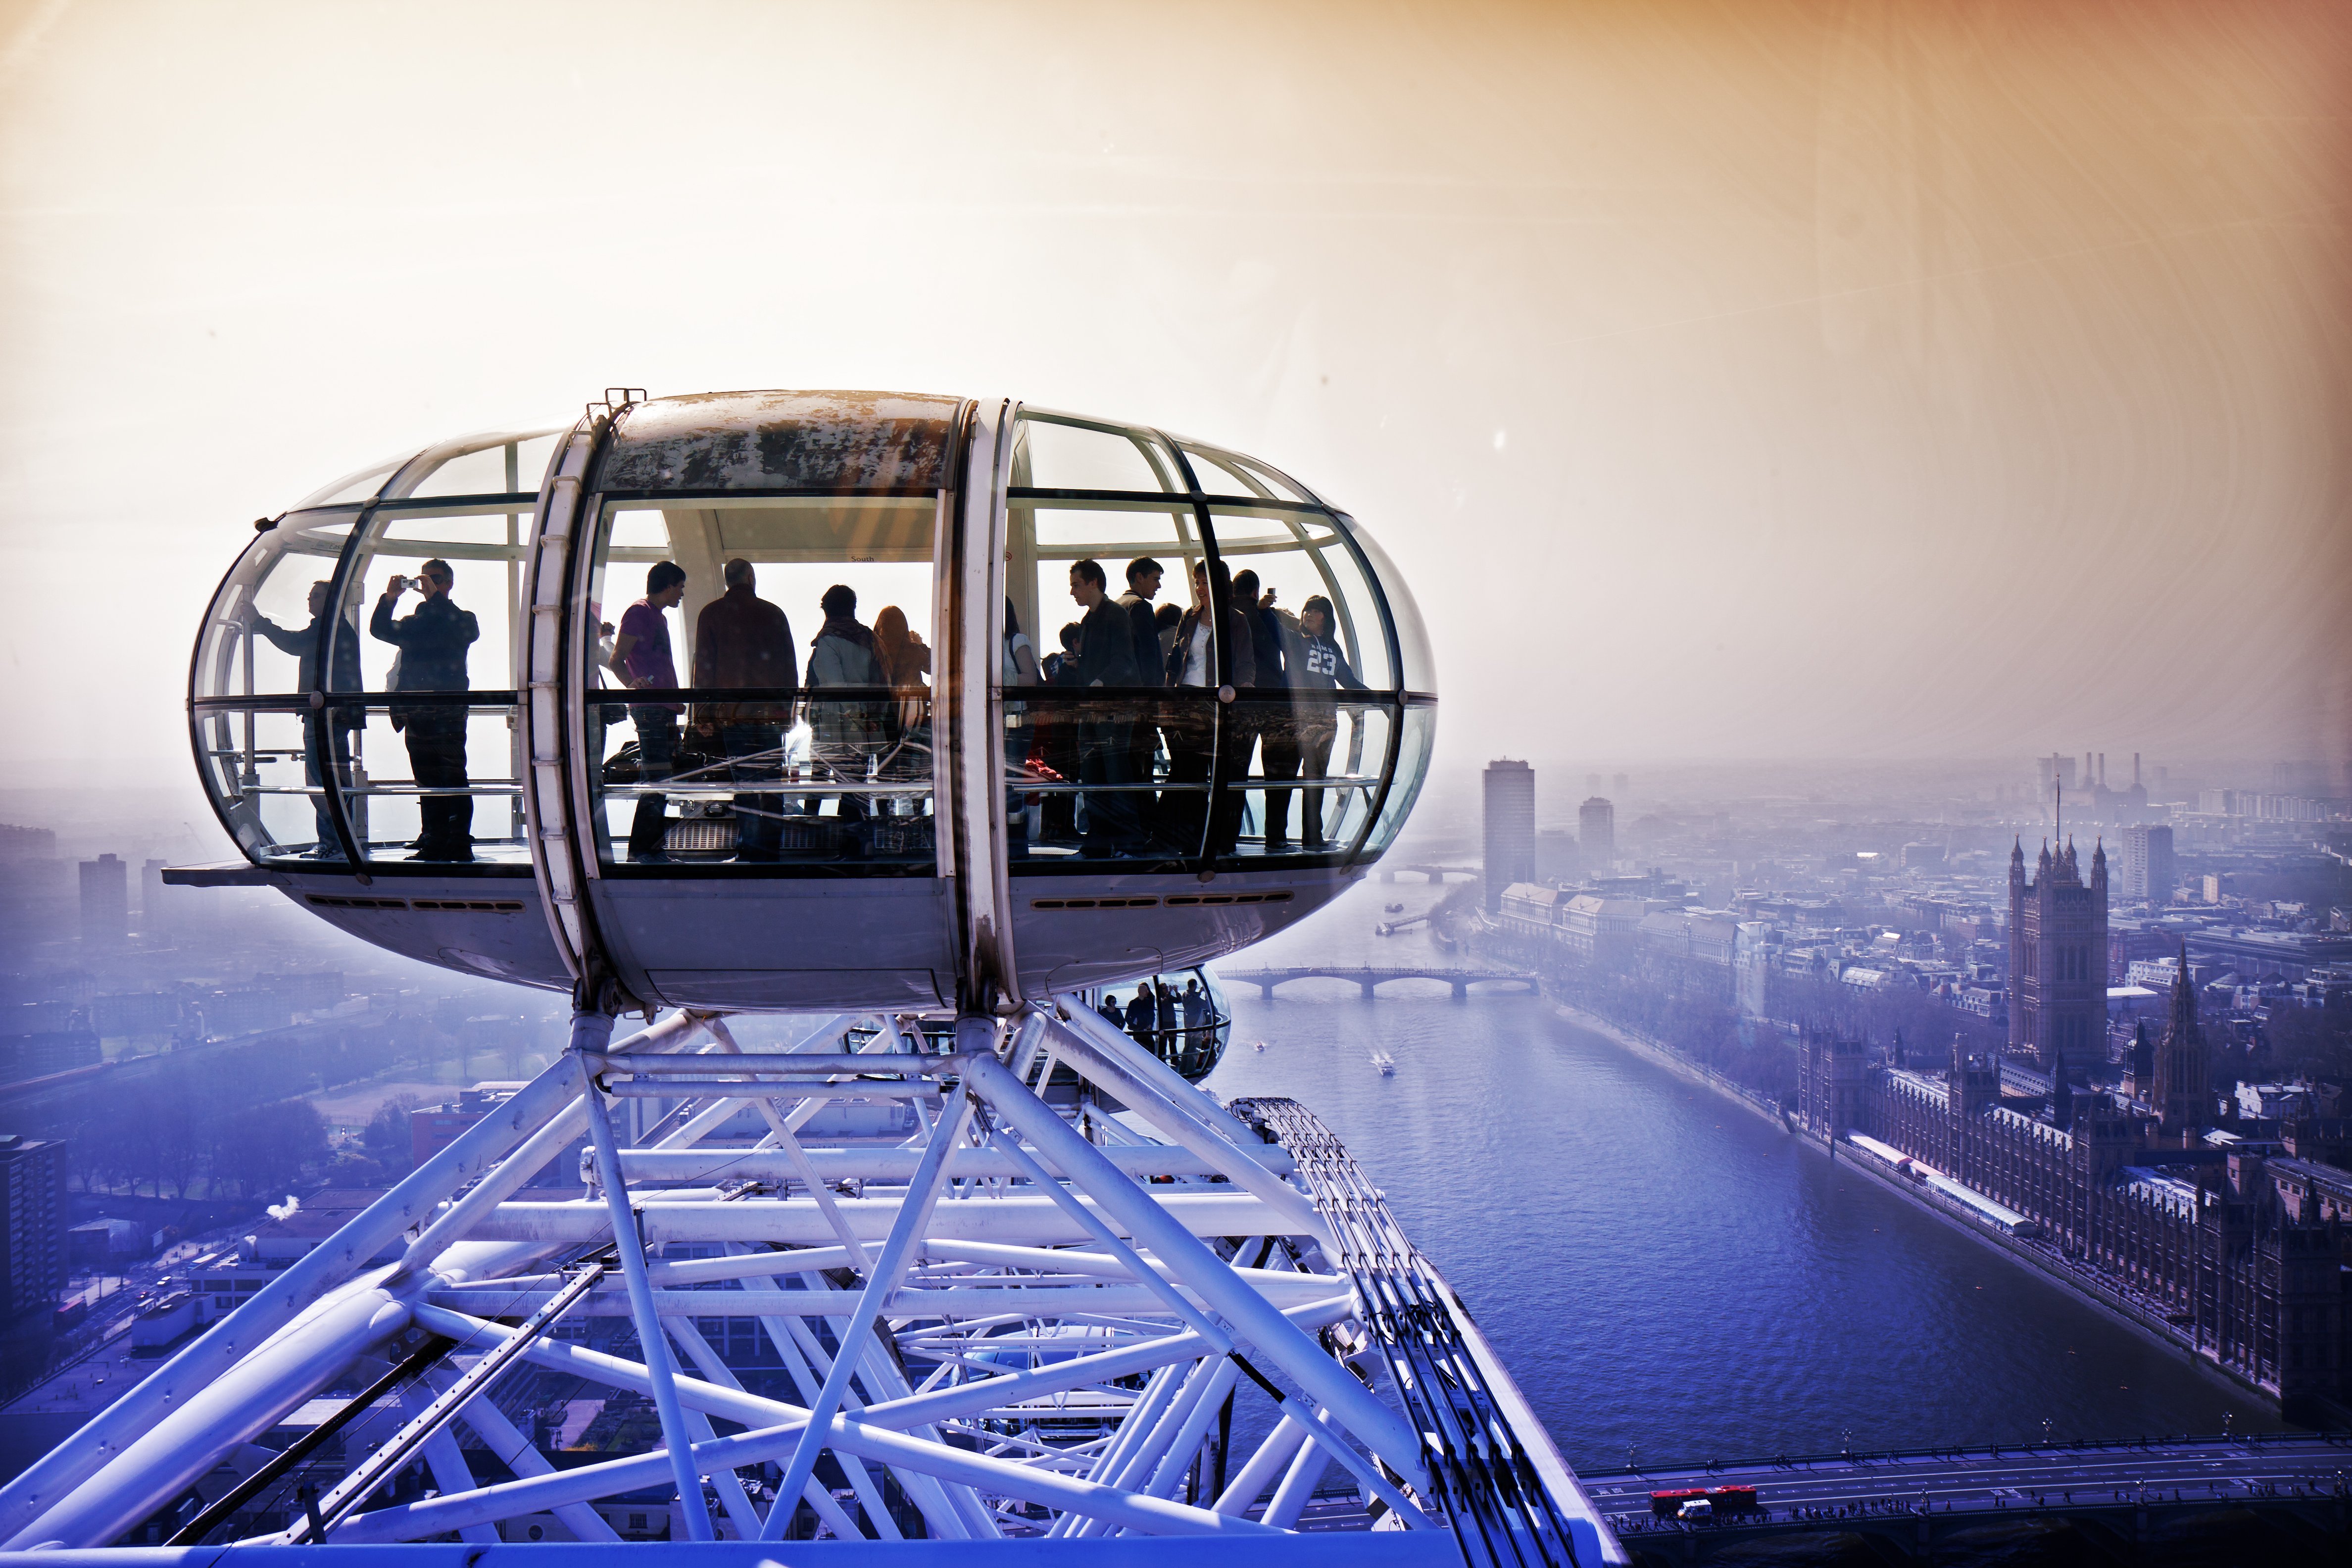 Великобритания колесо обозрения London Eye